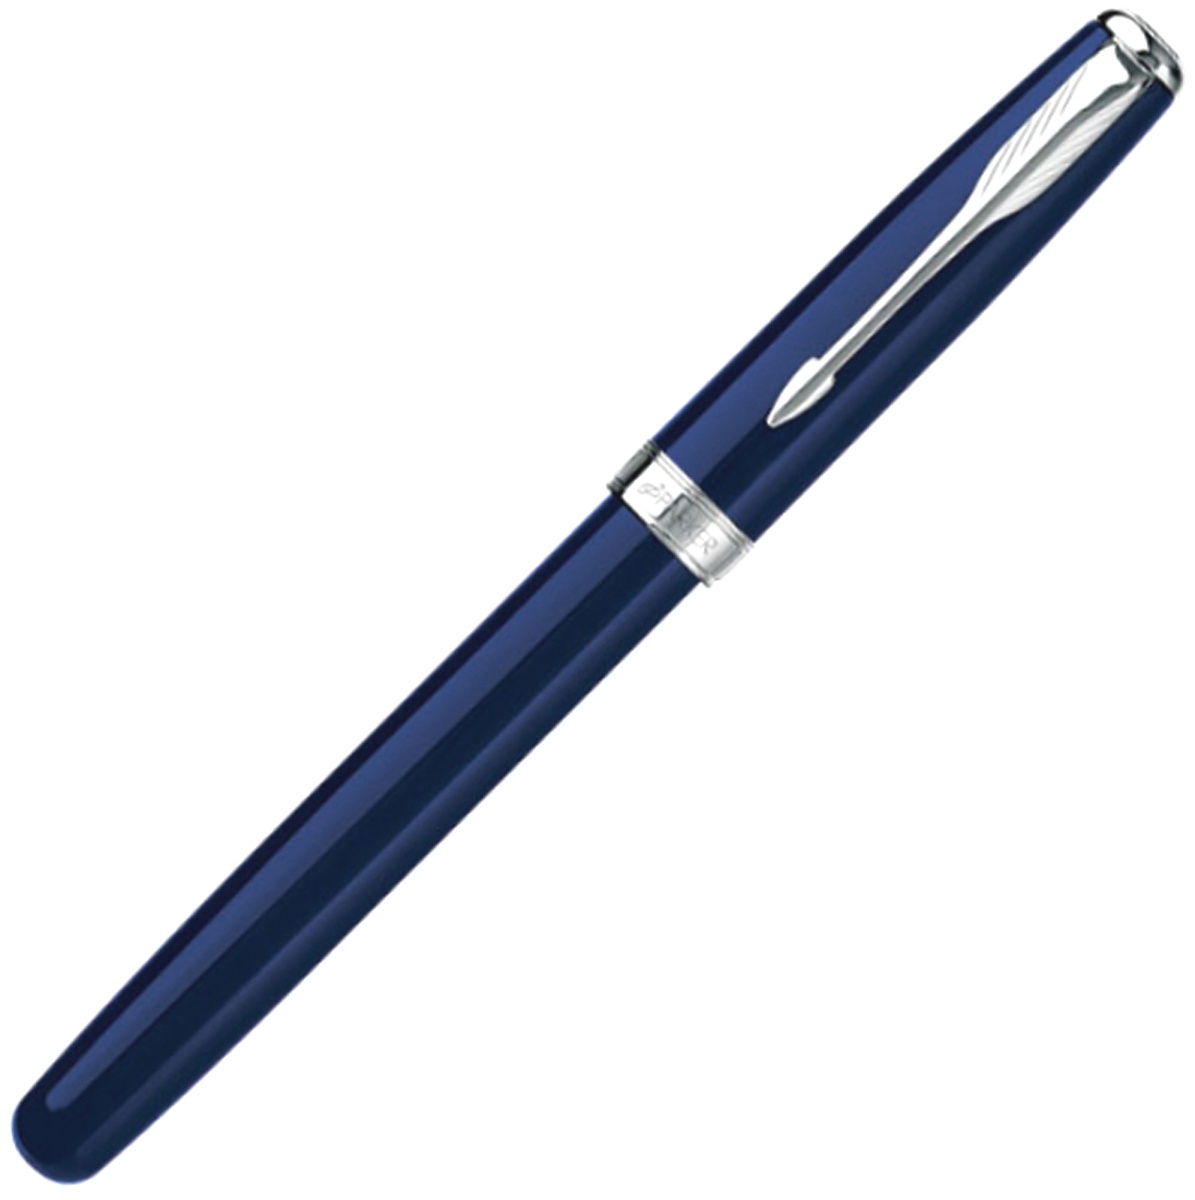 Ручка перьевая Parker Sonnet F539, Lacquer Blue СT (Перо M), фото 2